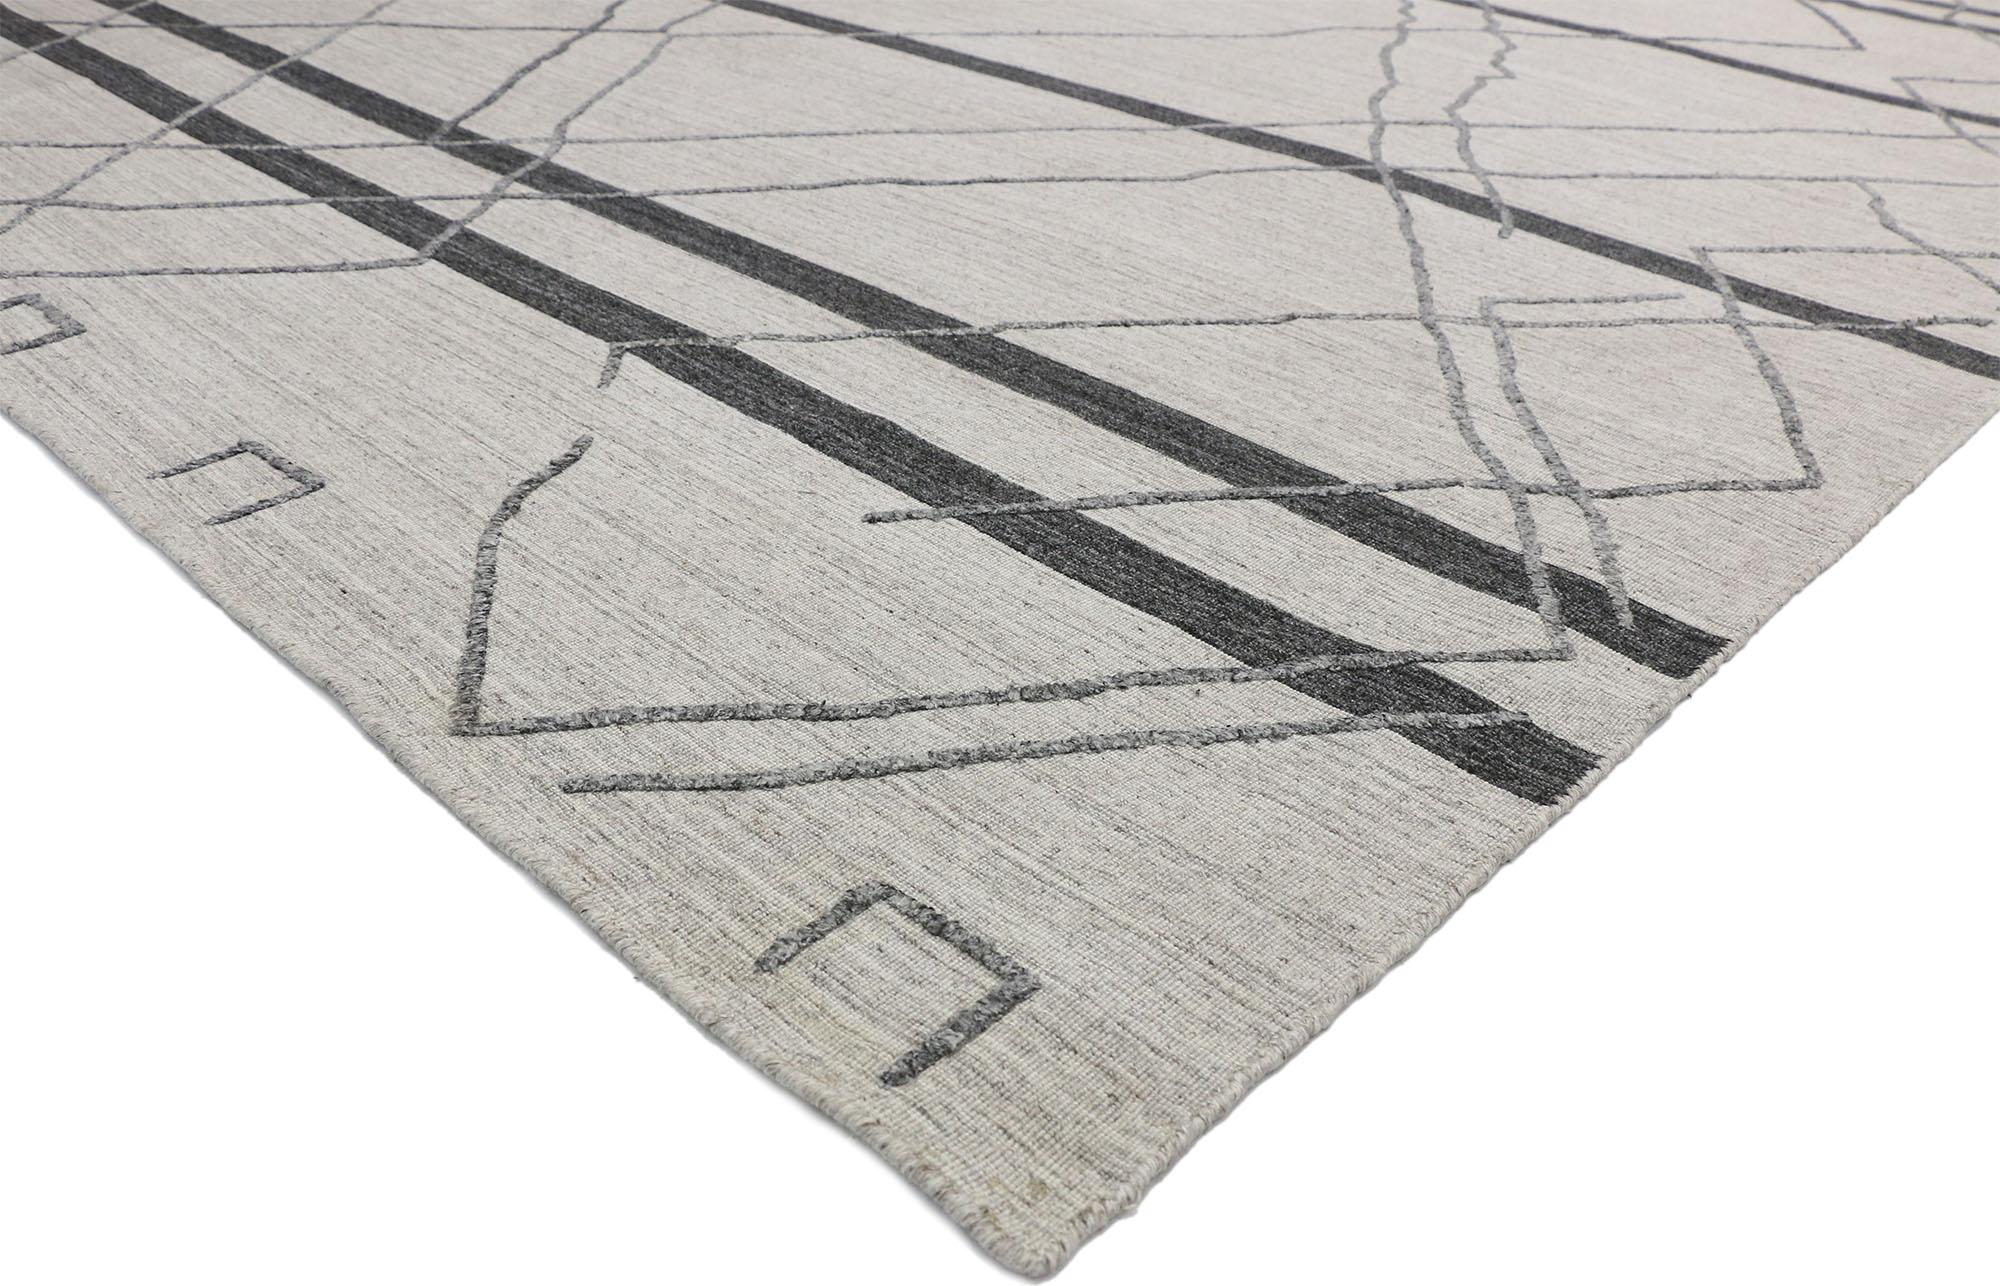 30428, zeitgenössische Gray Moderne marokkanische Stil Bereich Teppich mit erhöhten Design, Textur Bereich Teppich. Dieser moderne graue Teppich im marokkanischen Stil vereint warme Gemütlichkeit mit Stammesmotiven. Dieser marokkanische Teppich ist